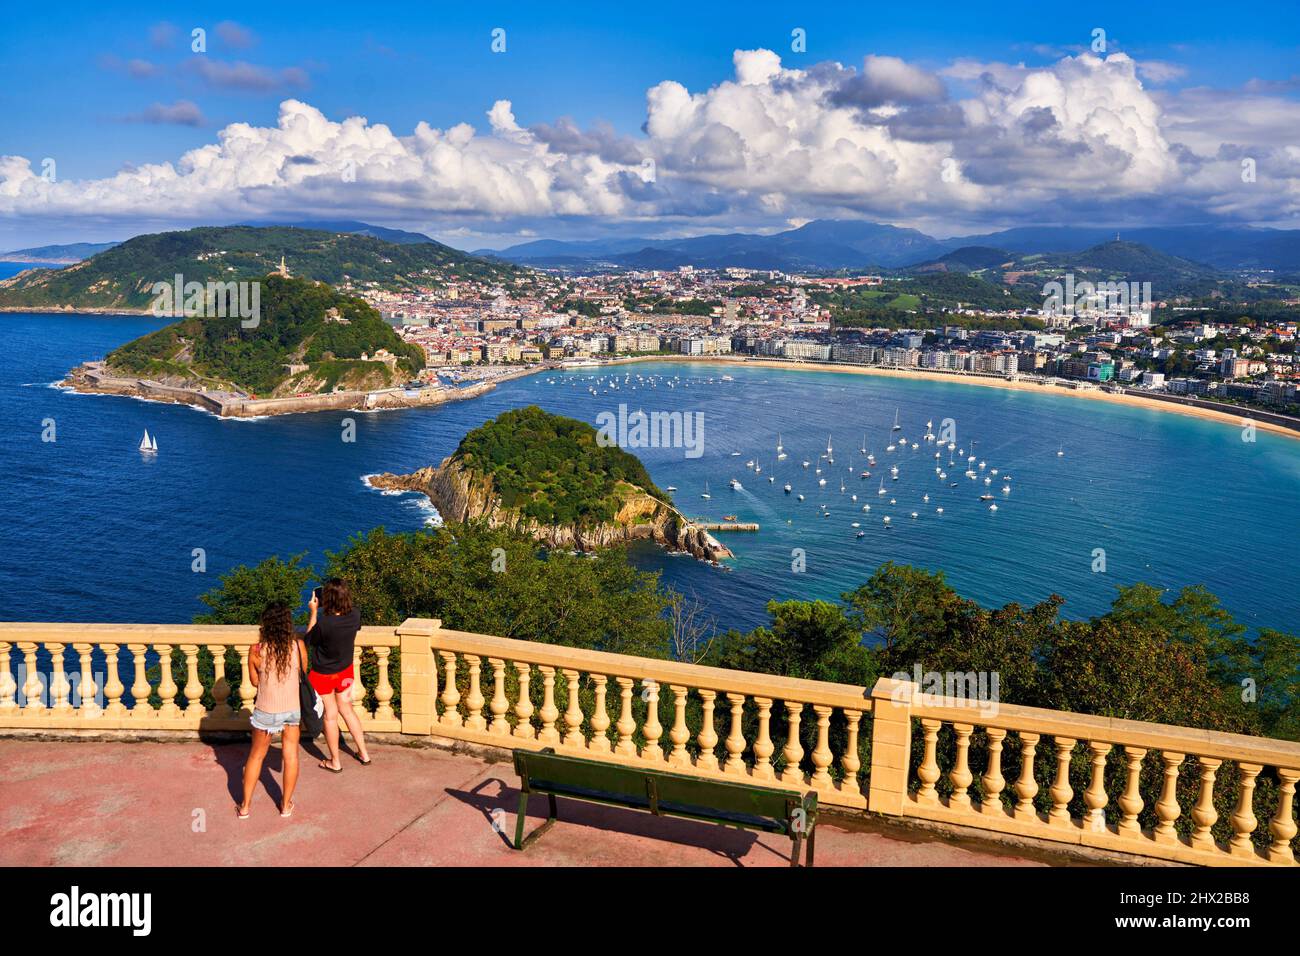 Pareja de turistas fotografiando la bahía de La Concha desde el mirador del Monte Igeldo, Donostia, San Sebastián, ciudad cosmopolita de 187.000 habitantes, destacó Foto de stock